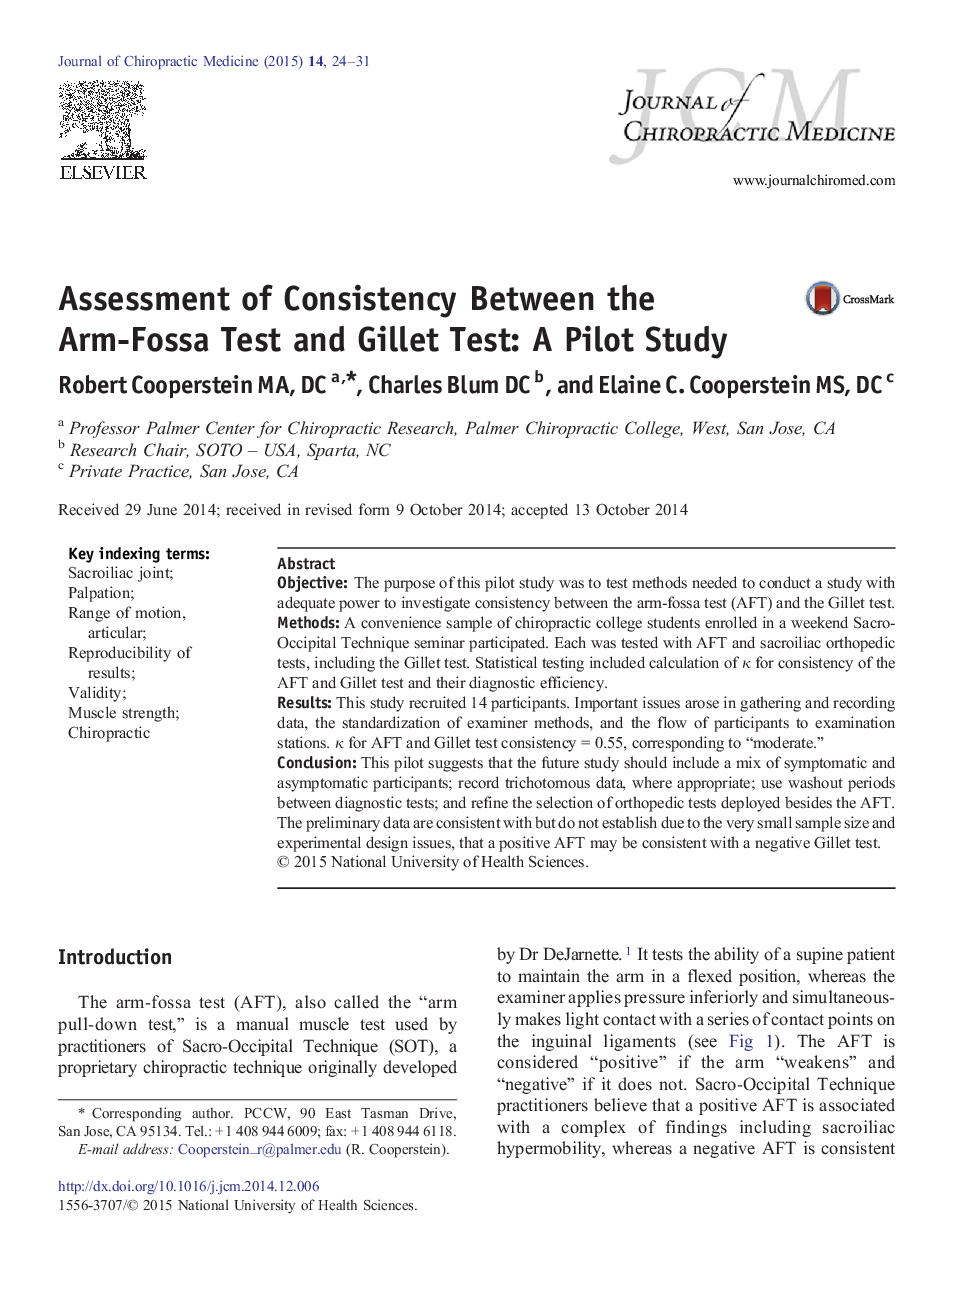 بررسی سازگاری بین تست Arm-Fossa و تست ژیلت: یک مطالعه آزمایشی